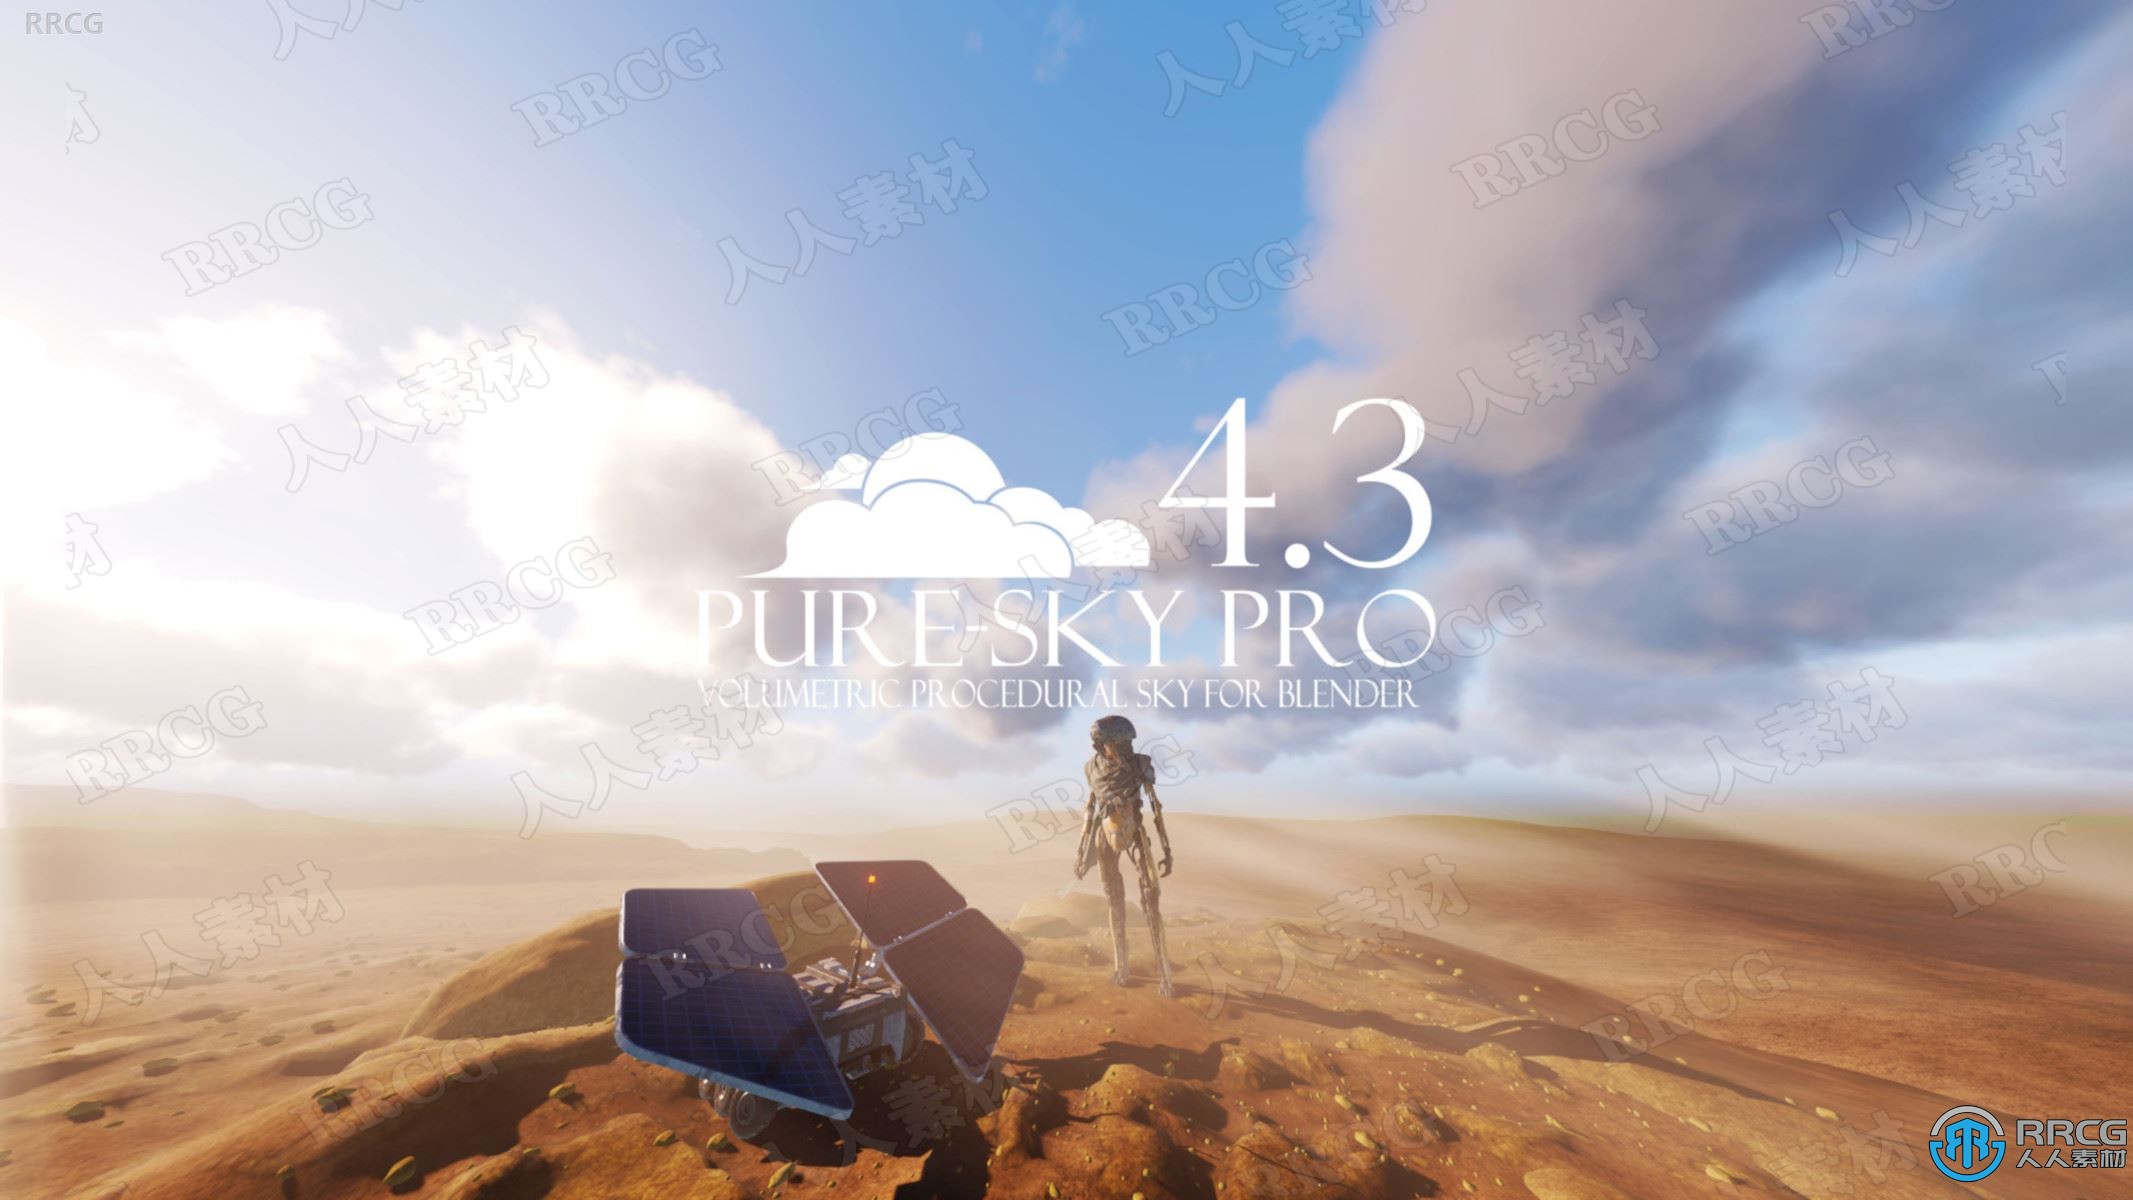 Pure-Sky Eevee Cycle各种天空场景Blender插件V4.3版